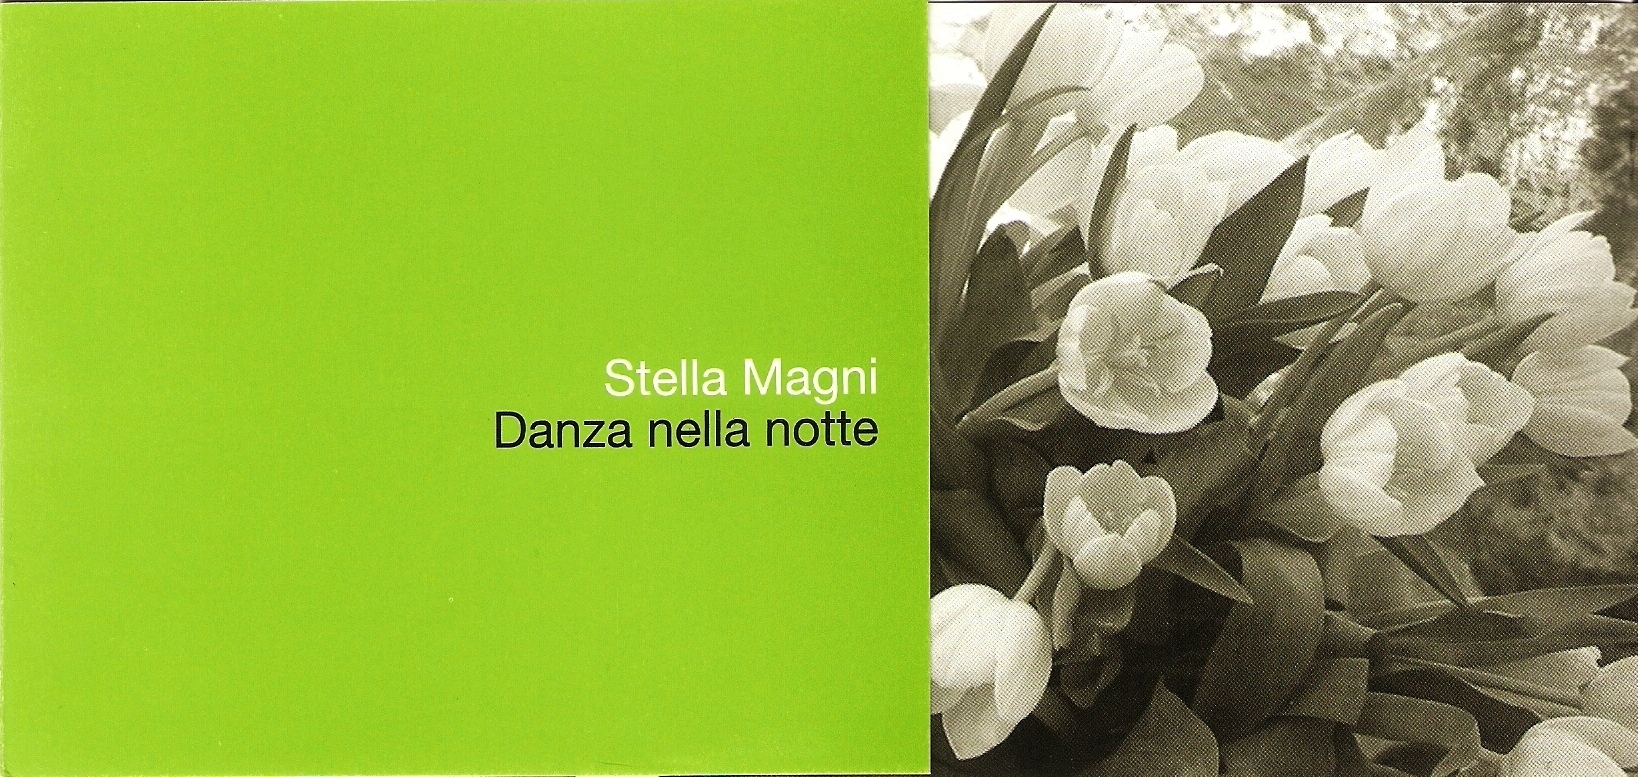 Incontro con la scrittrice Stella Magni